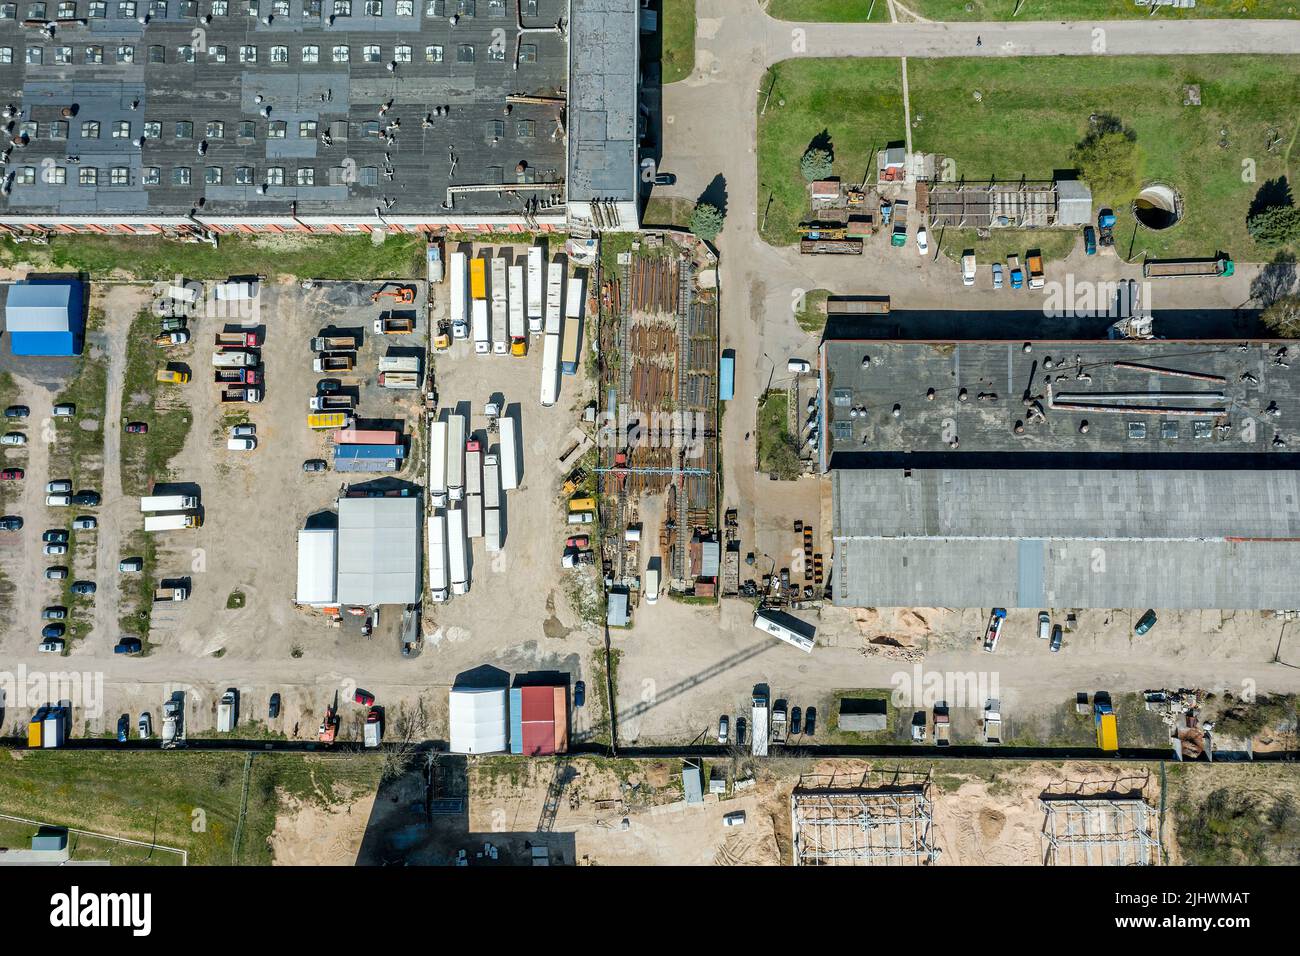 vista aérea de una zona industrial con almacenes y fábricas de empresas de fabricación Foto de stock